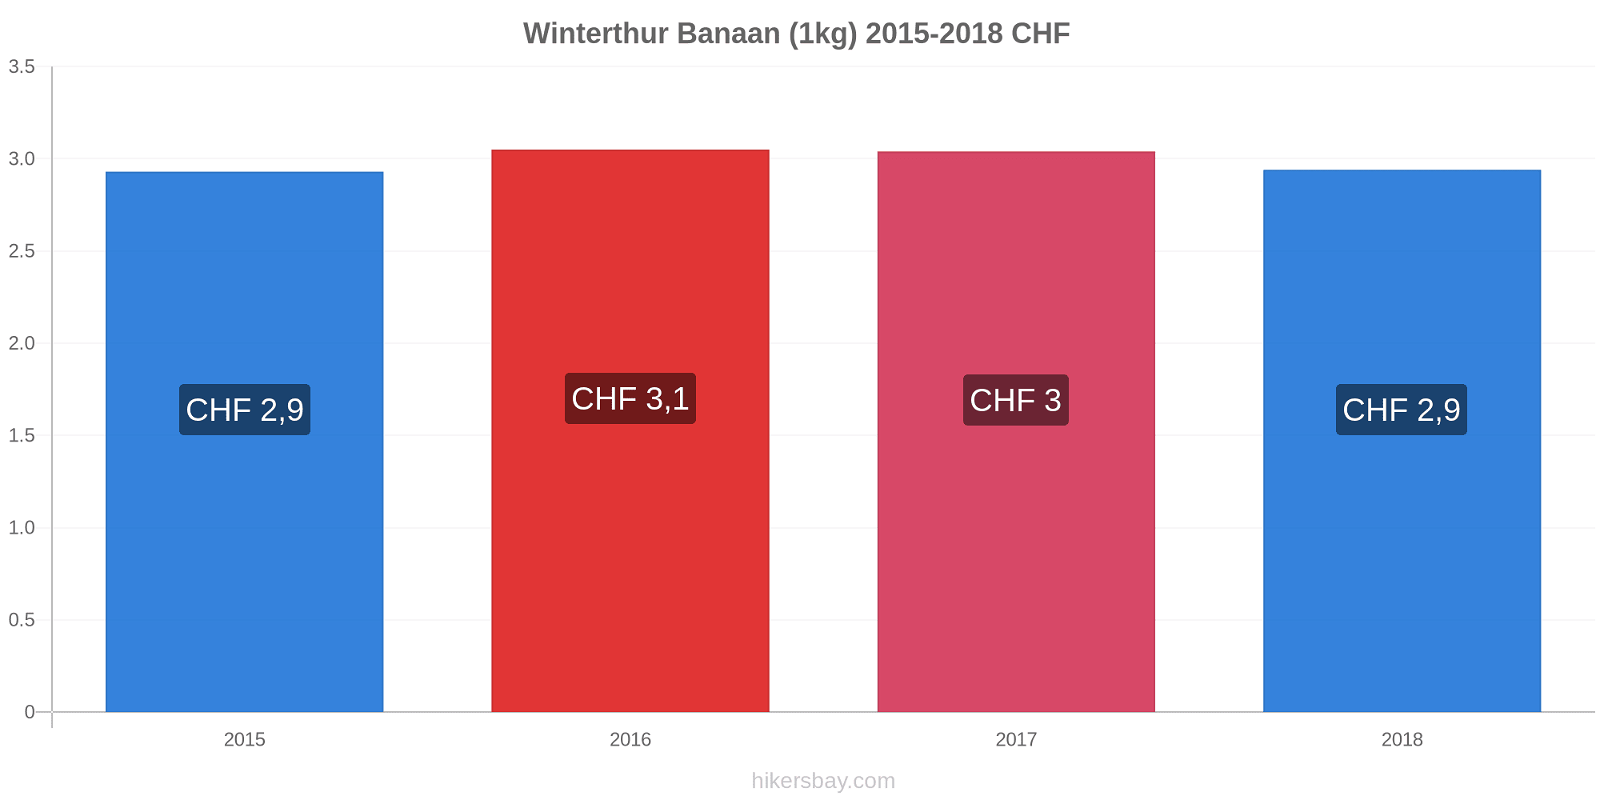 Winterthur prijswijzigingen Banaan (1kg) hikersbay.com